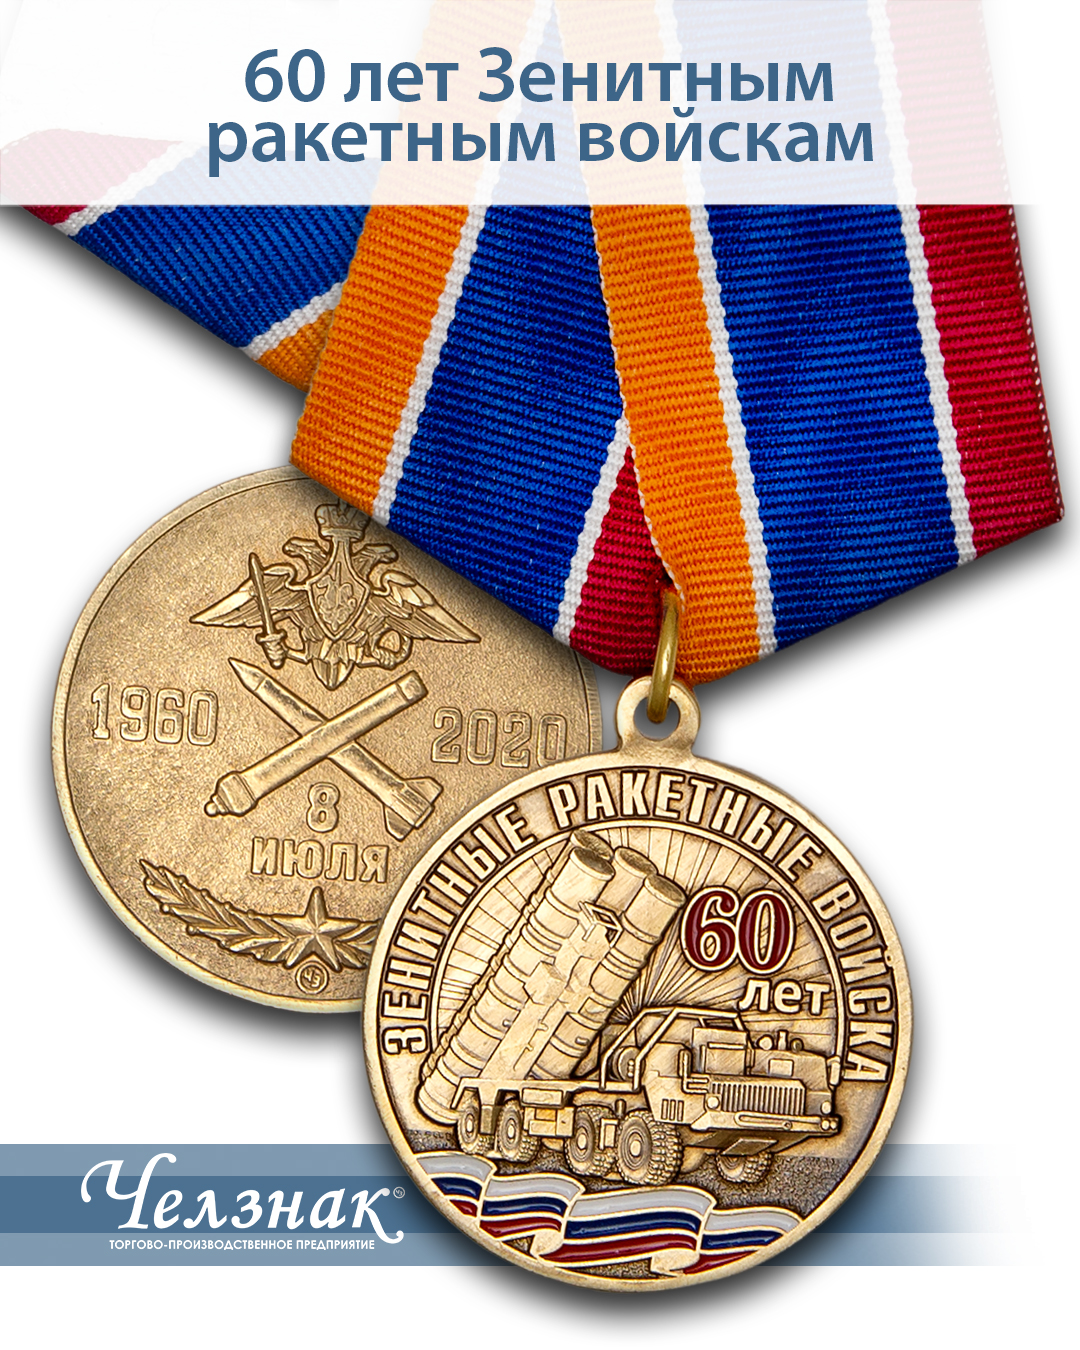 Награды 60 лет ЗРВ ПВО